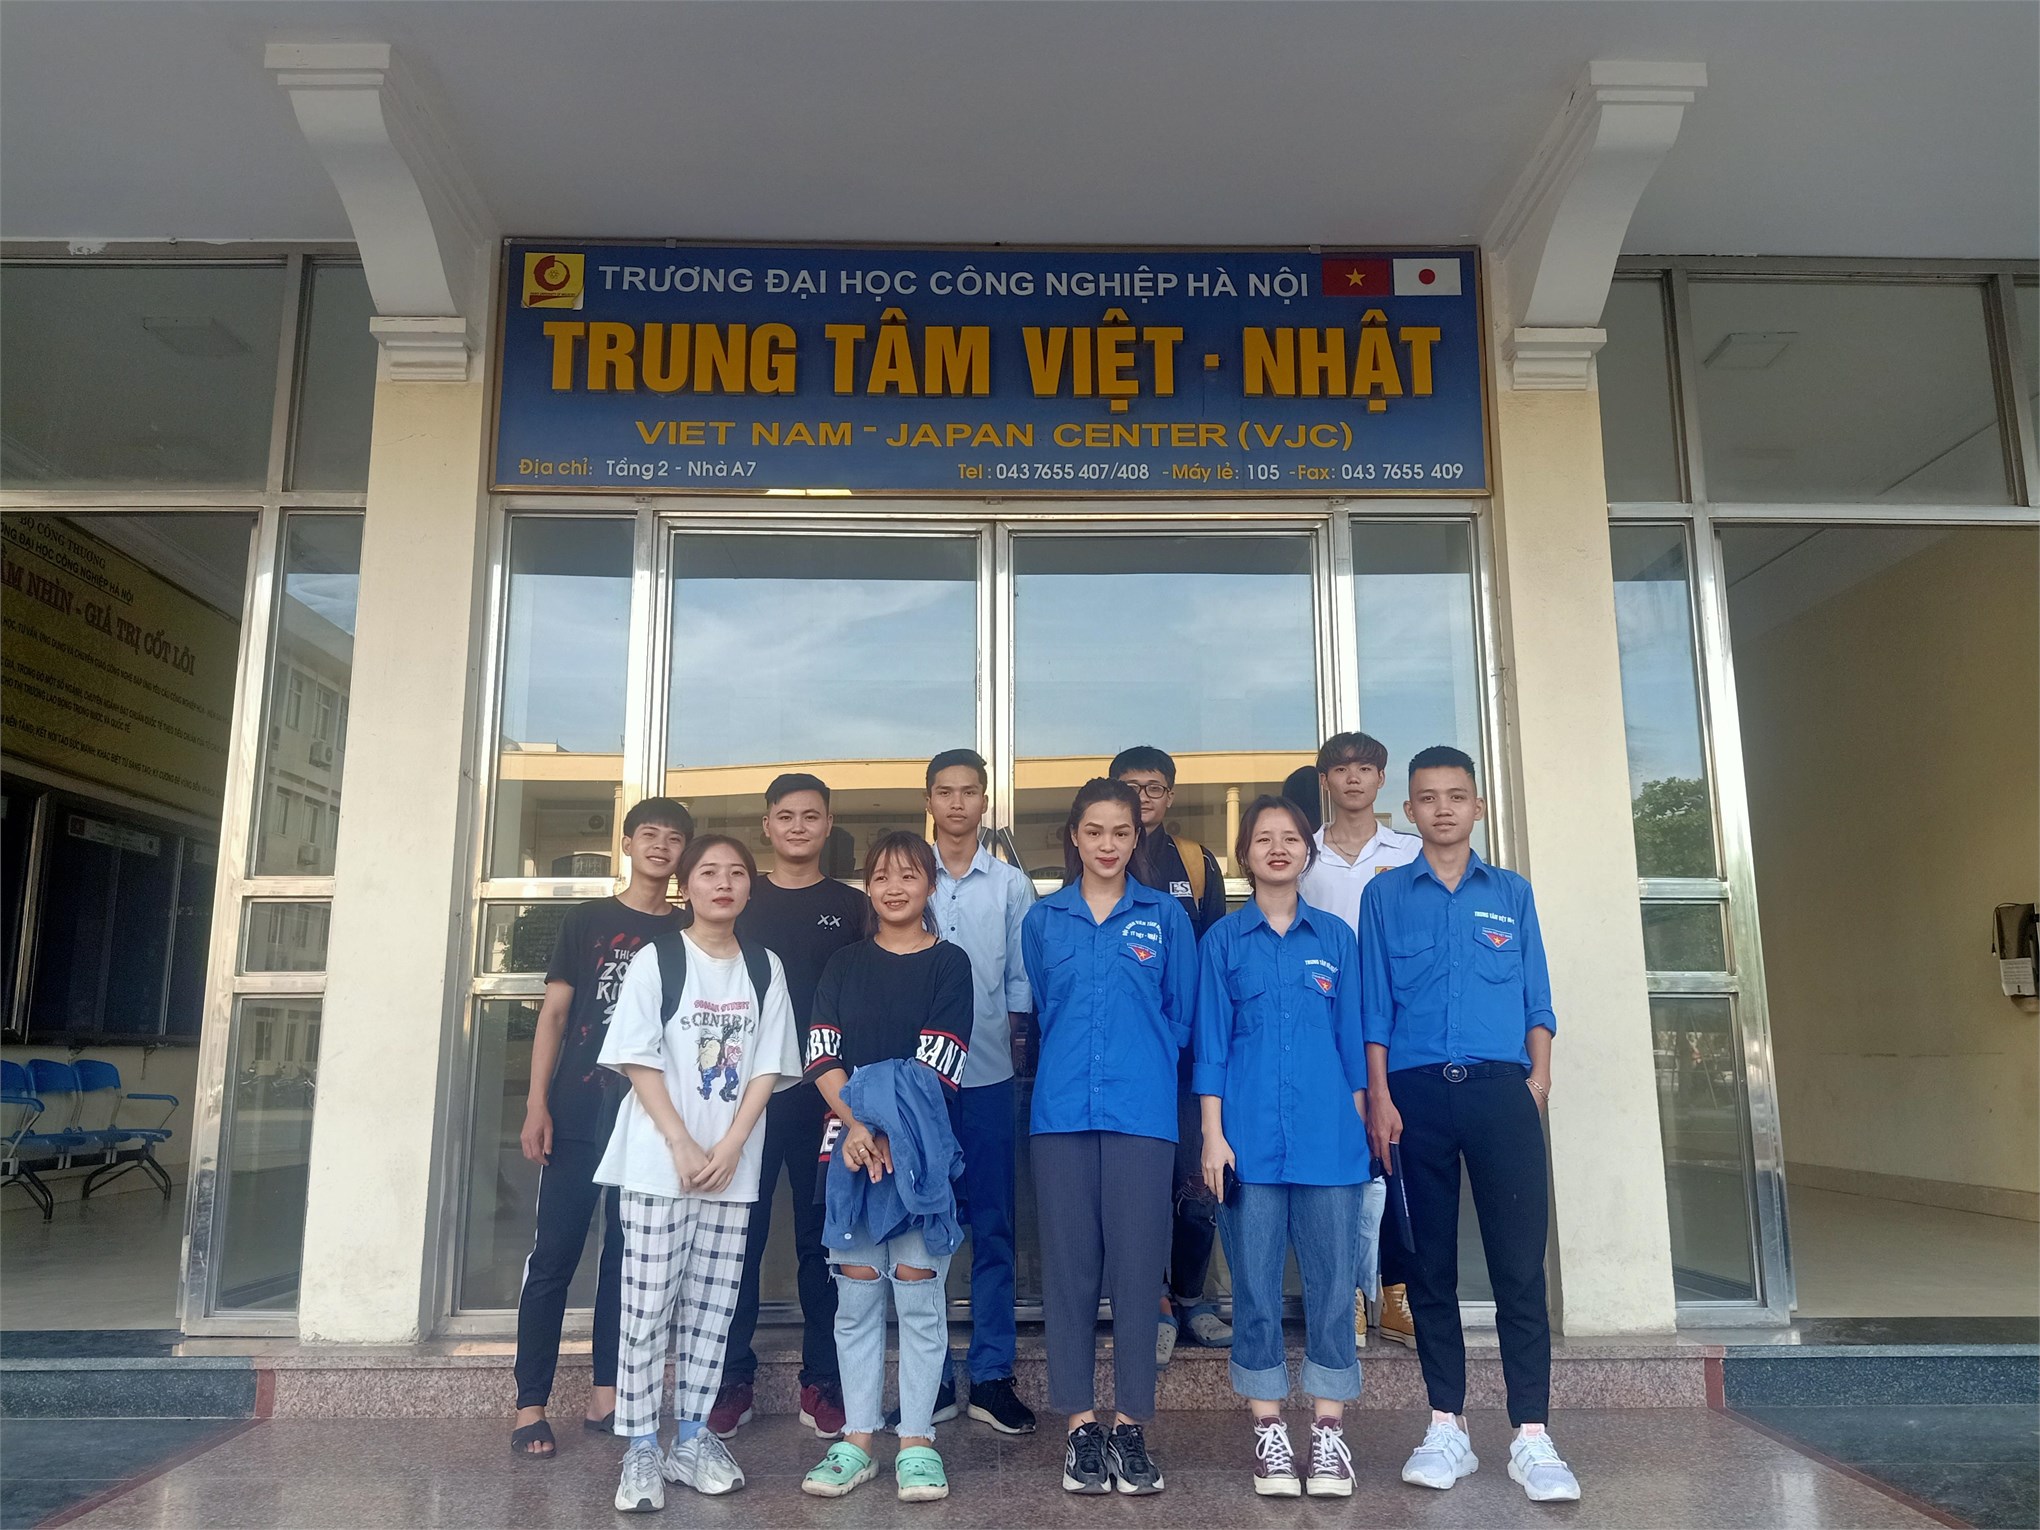 Liên chi đoàn Trung tâm Việt – Nhật ra quân thực hiện 5S tháng 6/2020